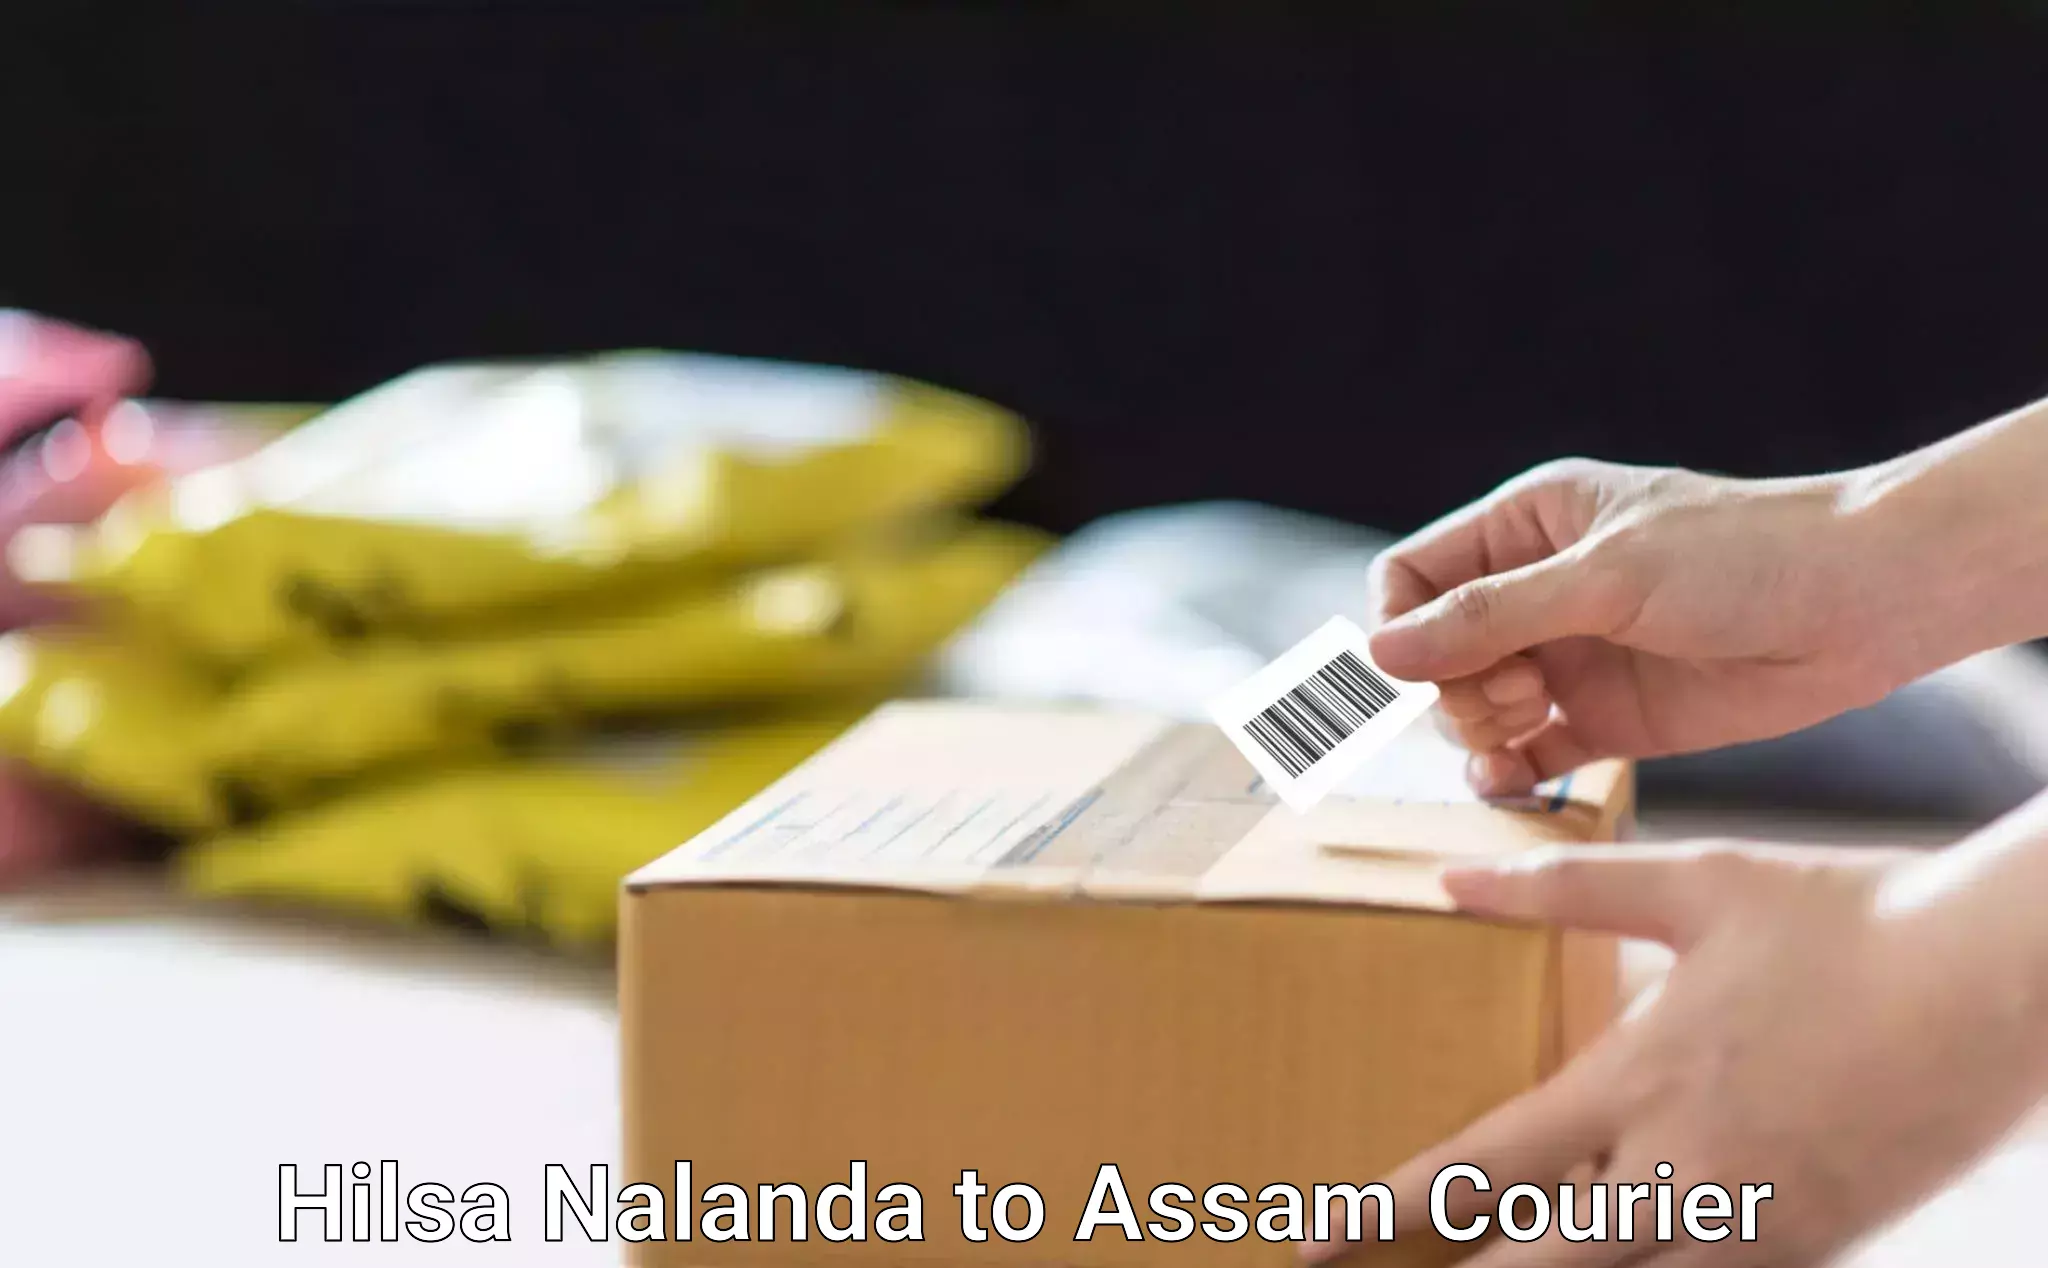 Budget-friendly moving services Hilsa Nalanda to Assam